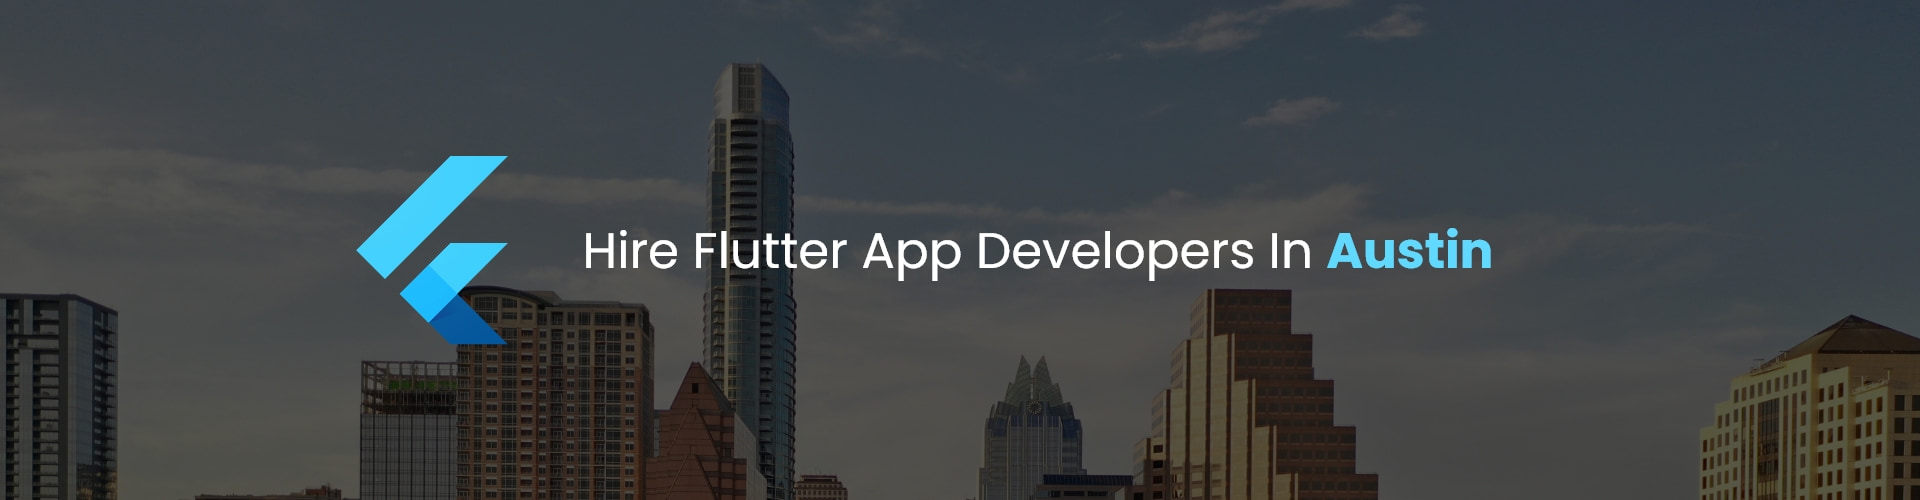 hire flutter app developers in austin